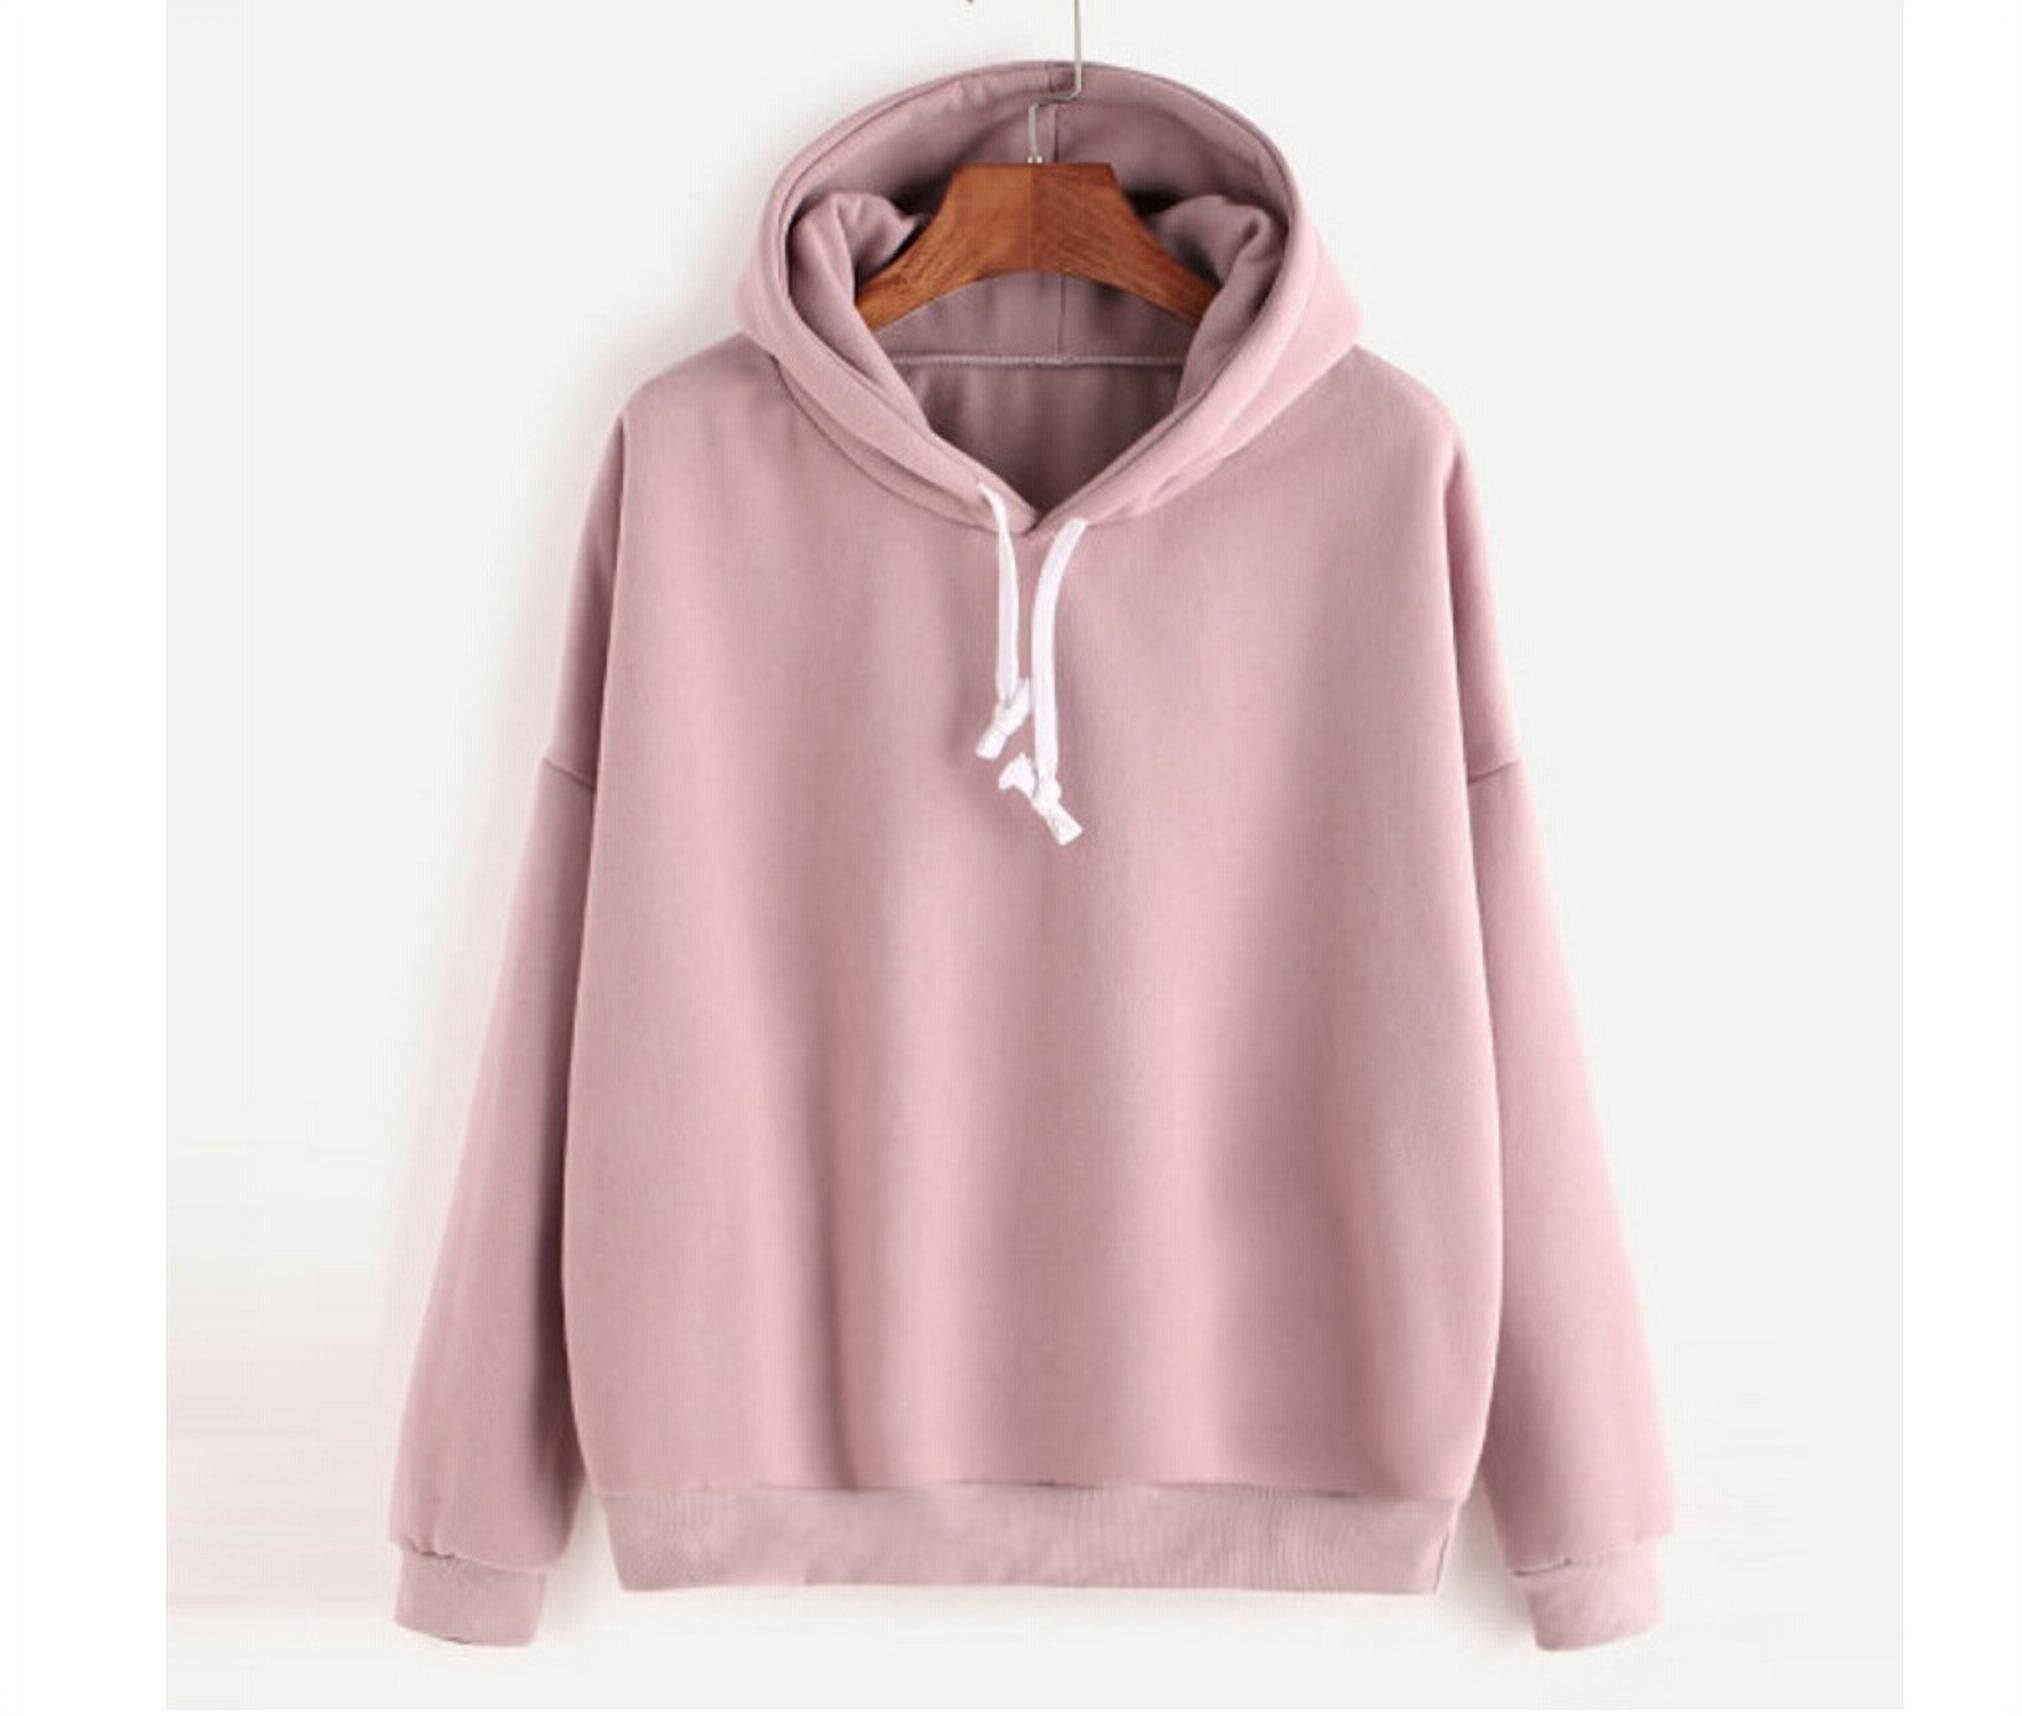 prioritet Særlig Temmelig Fashion Women Hoodies Sweatshirt Ladies Hooded Sweater Tops Jumper Pullover  - Walmart.com